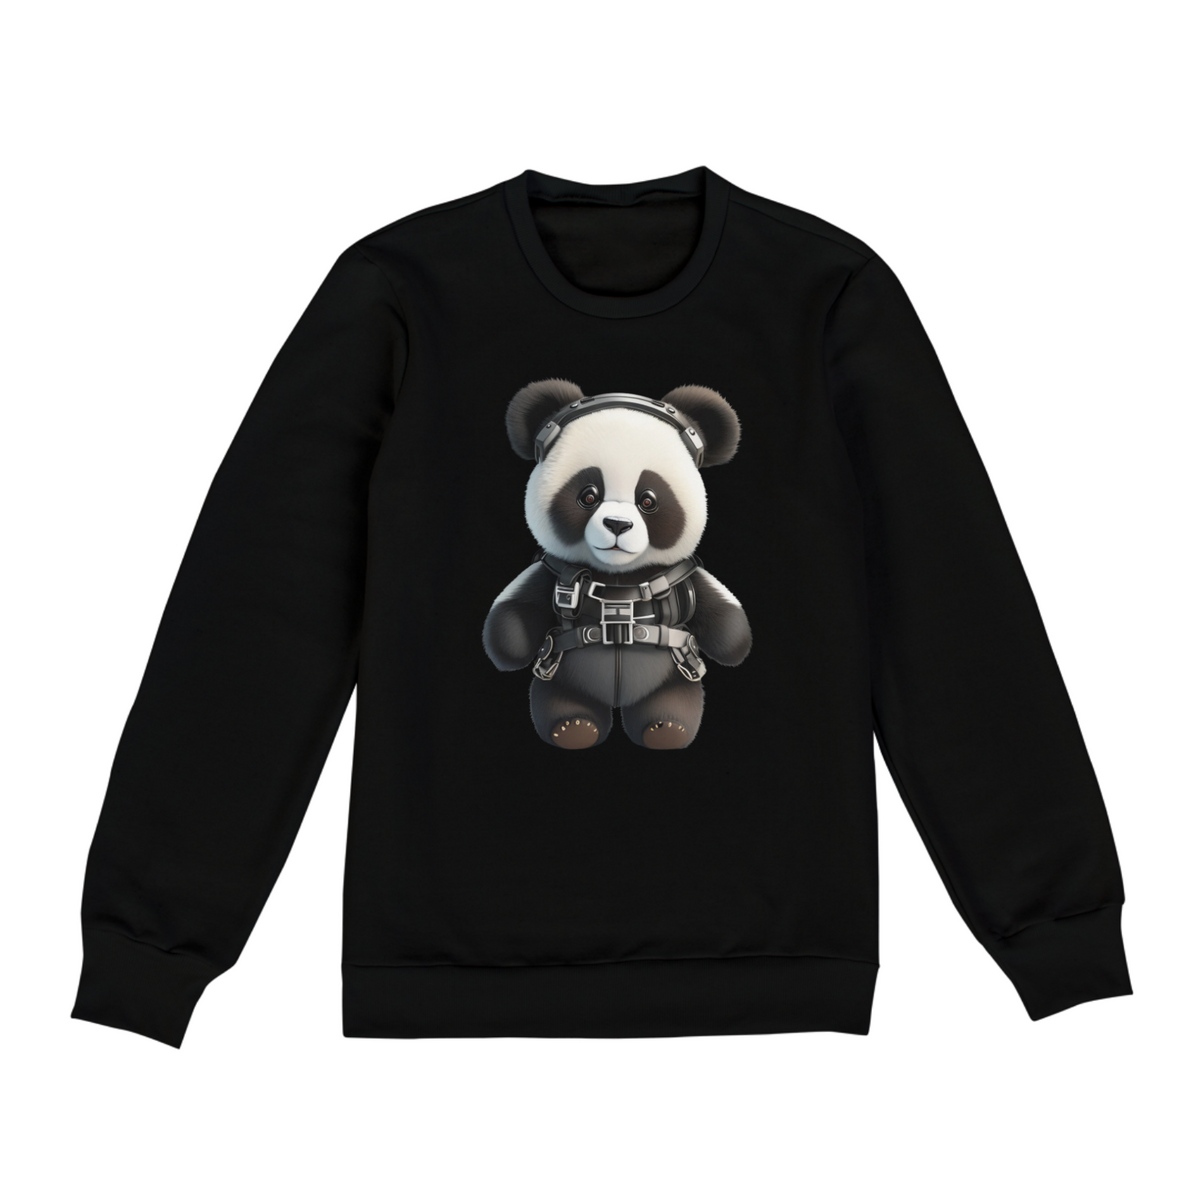 Nome do produto: Panda 2 - Moletom